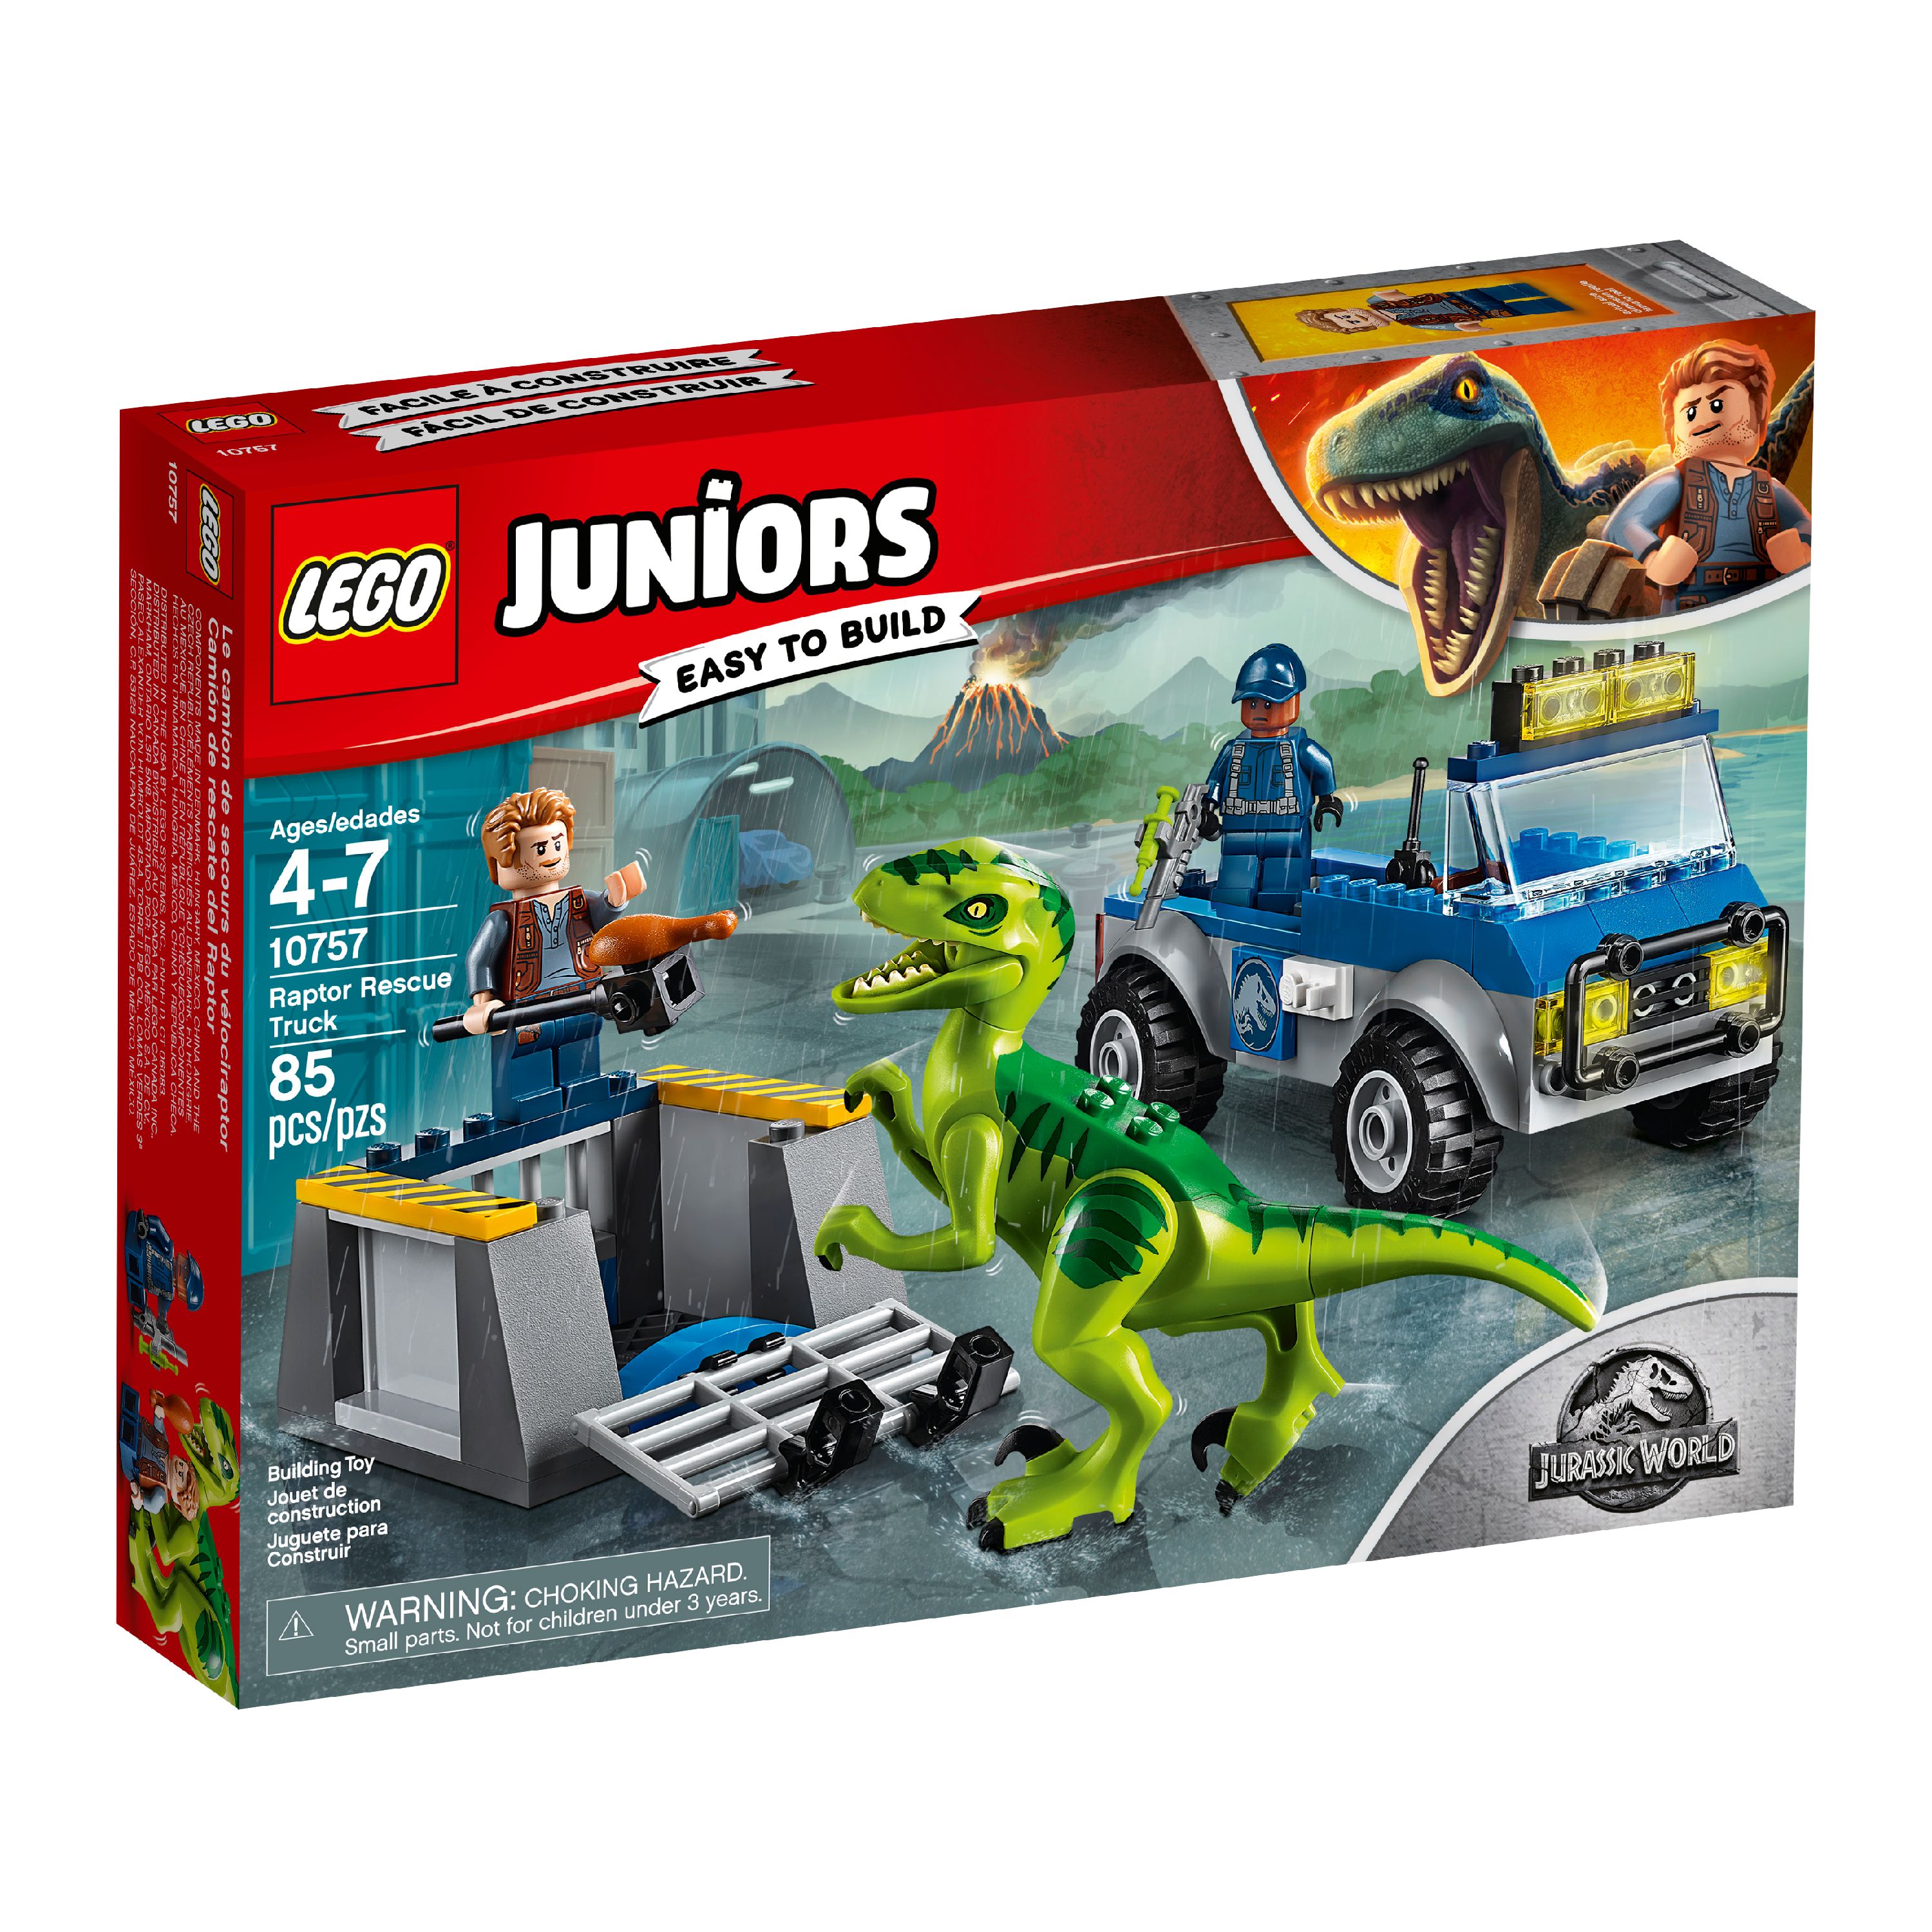 LEGO Juniors Raptor Rescue Truck 10757 (85 Pieces) - image 4 of 5